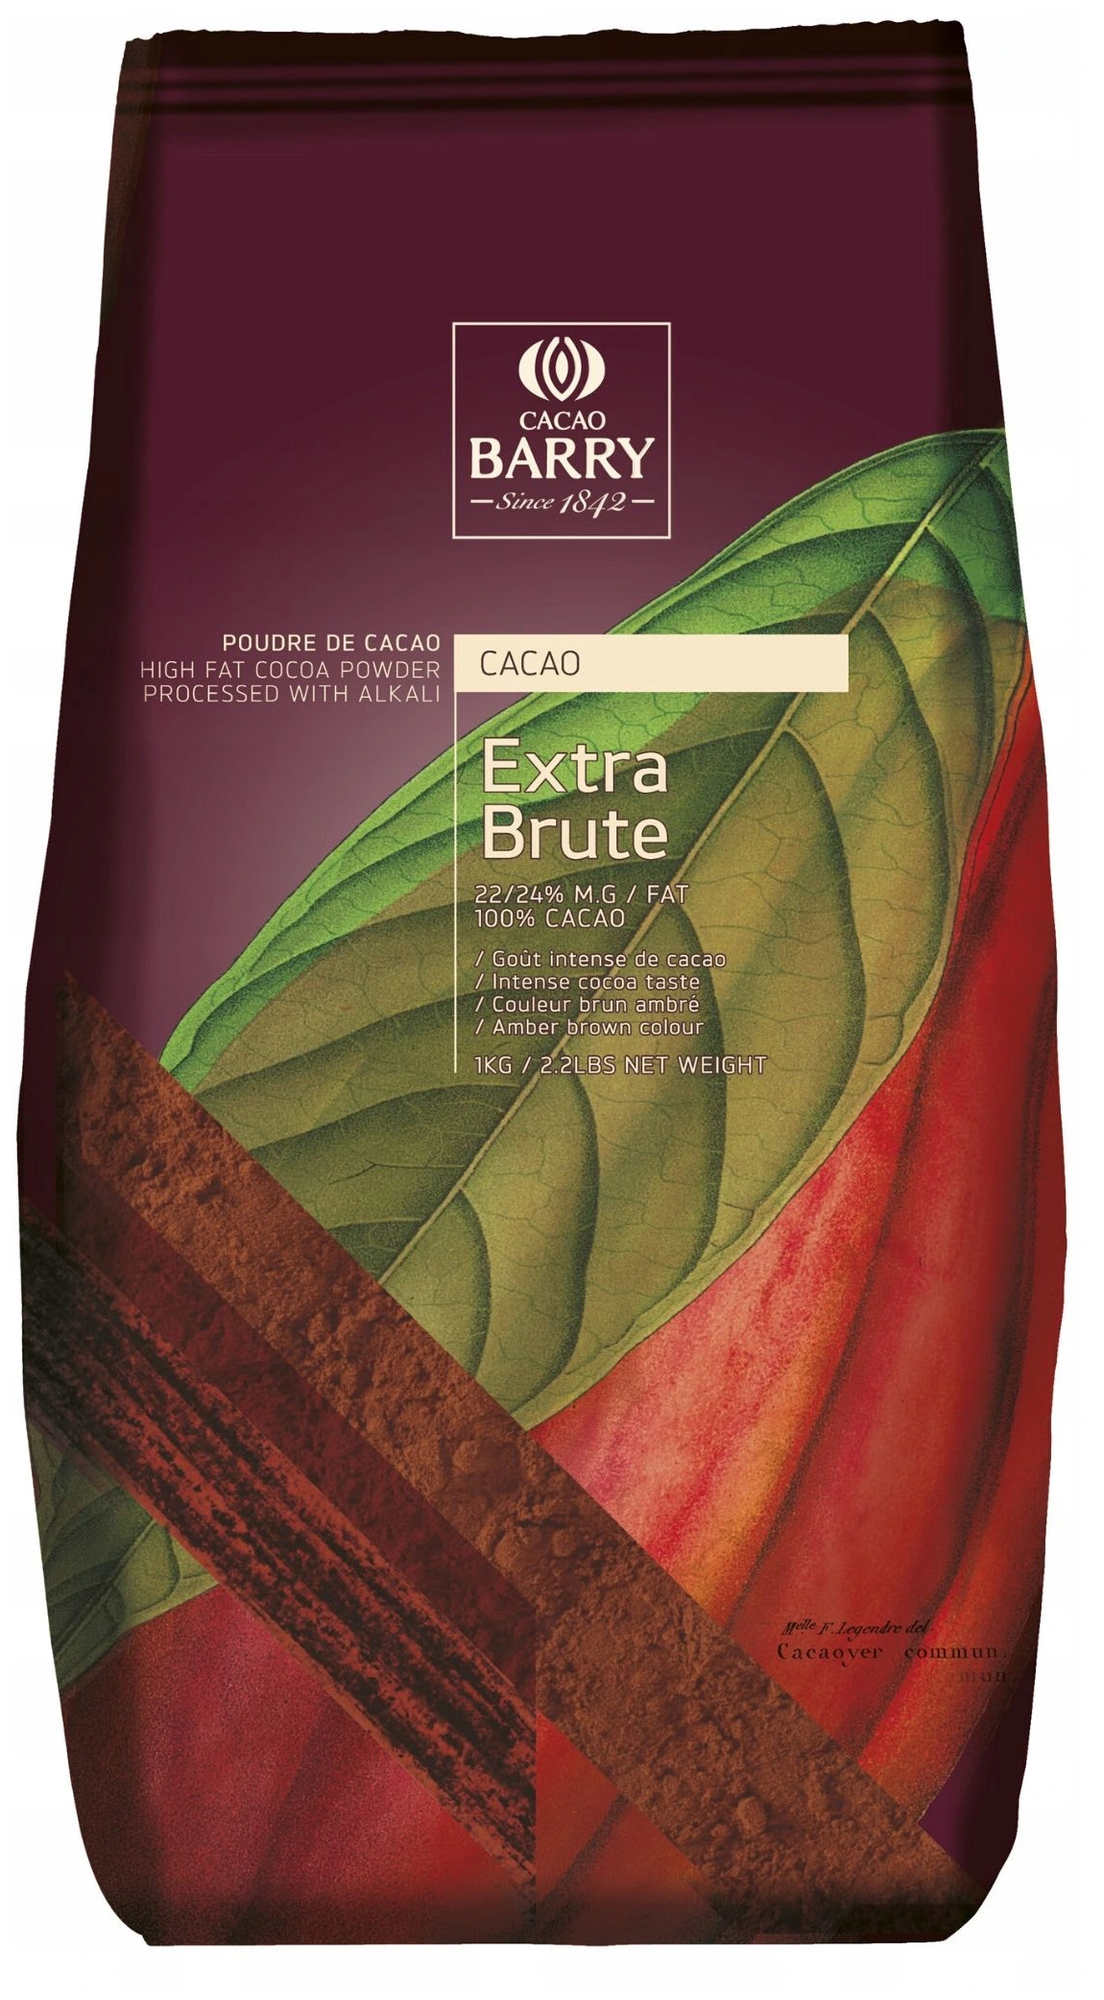 Cacao Barry Какао-порошок растворимый алкализованный Extra Brute